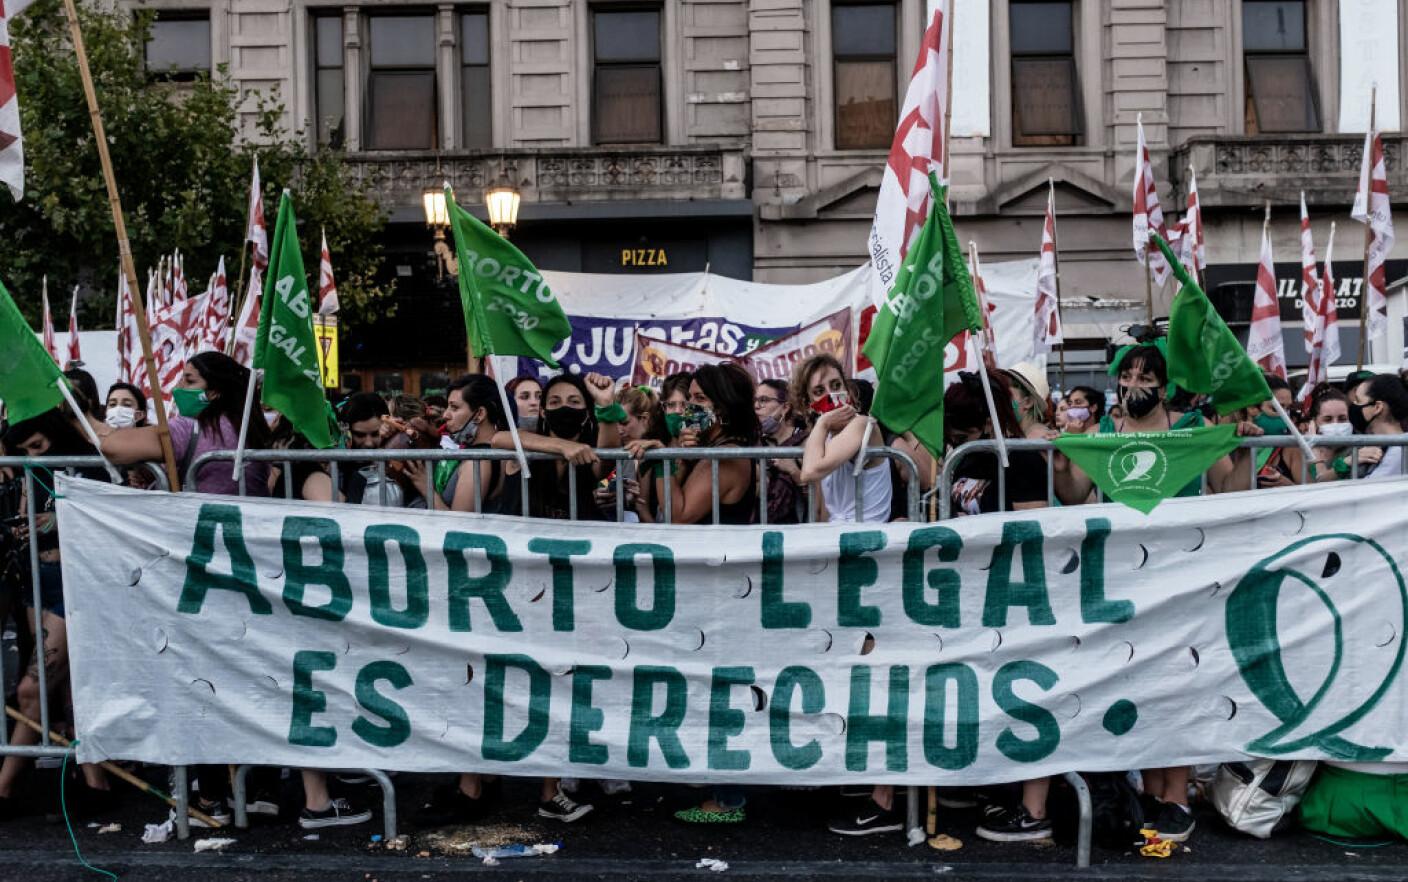 Manifestatii pentru legalizarea avortului în Argentina